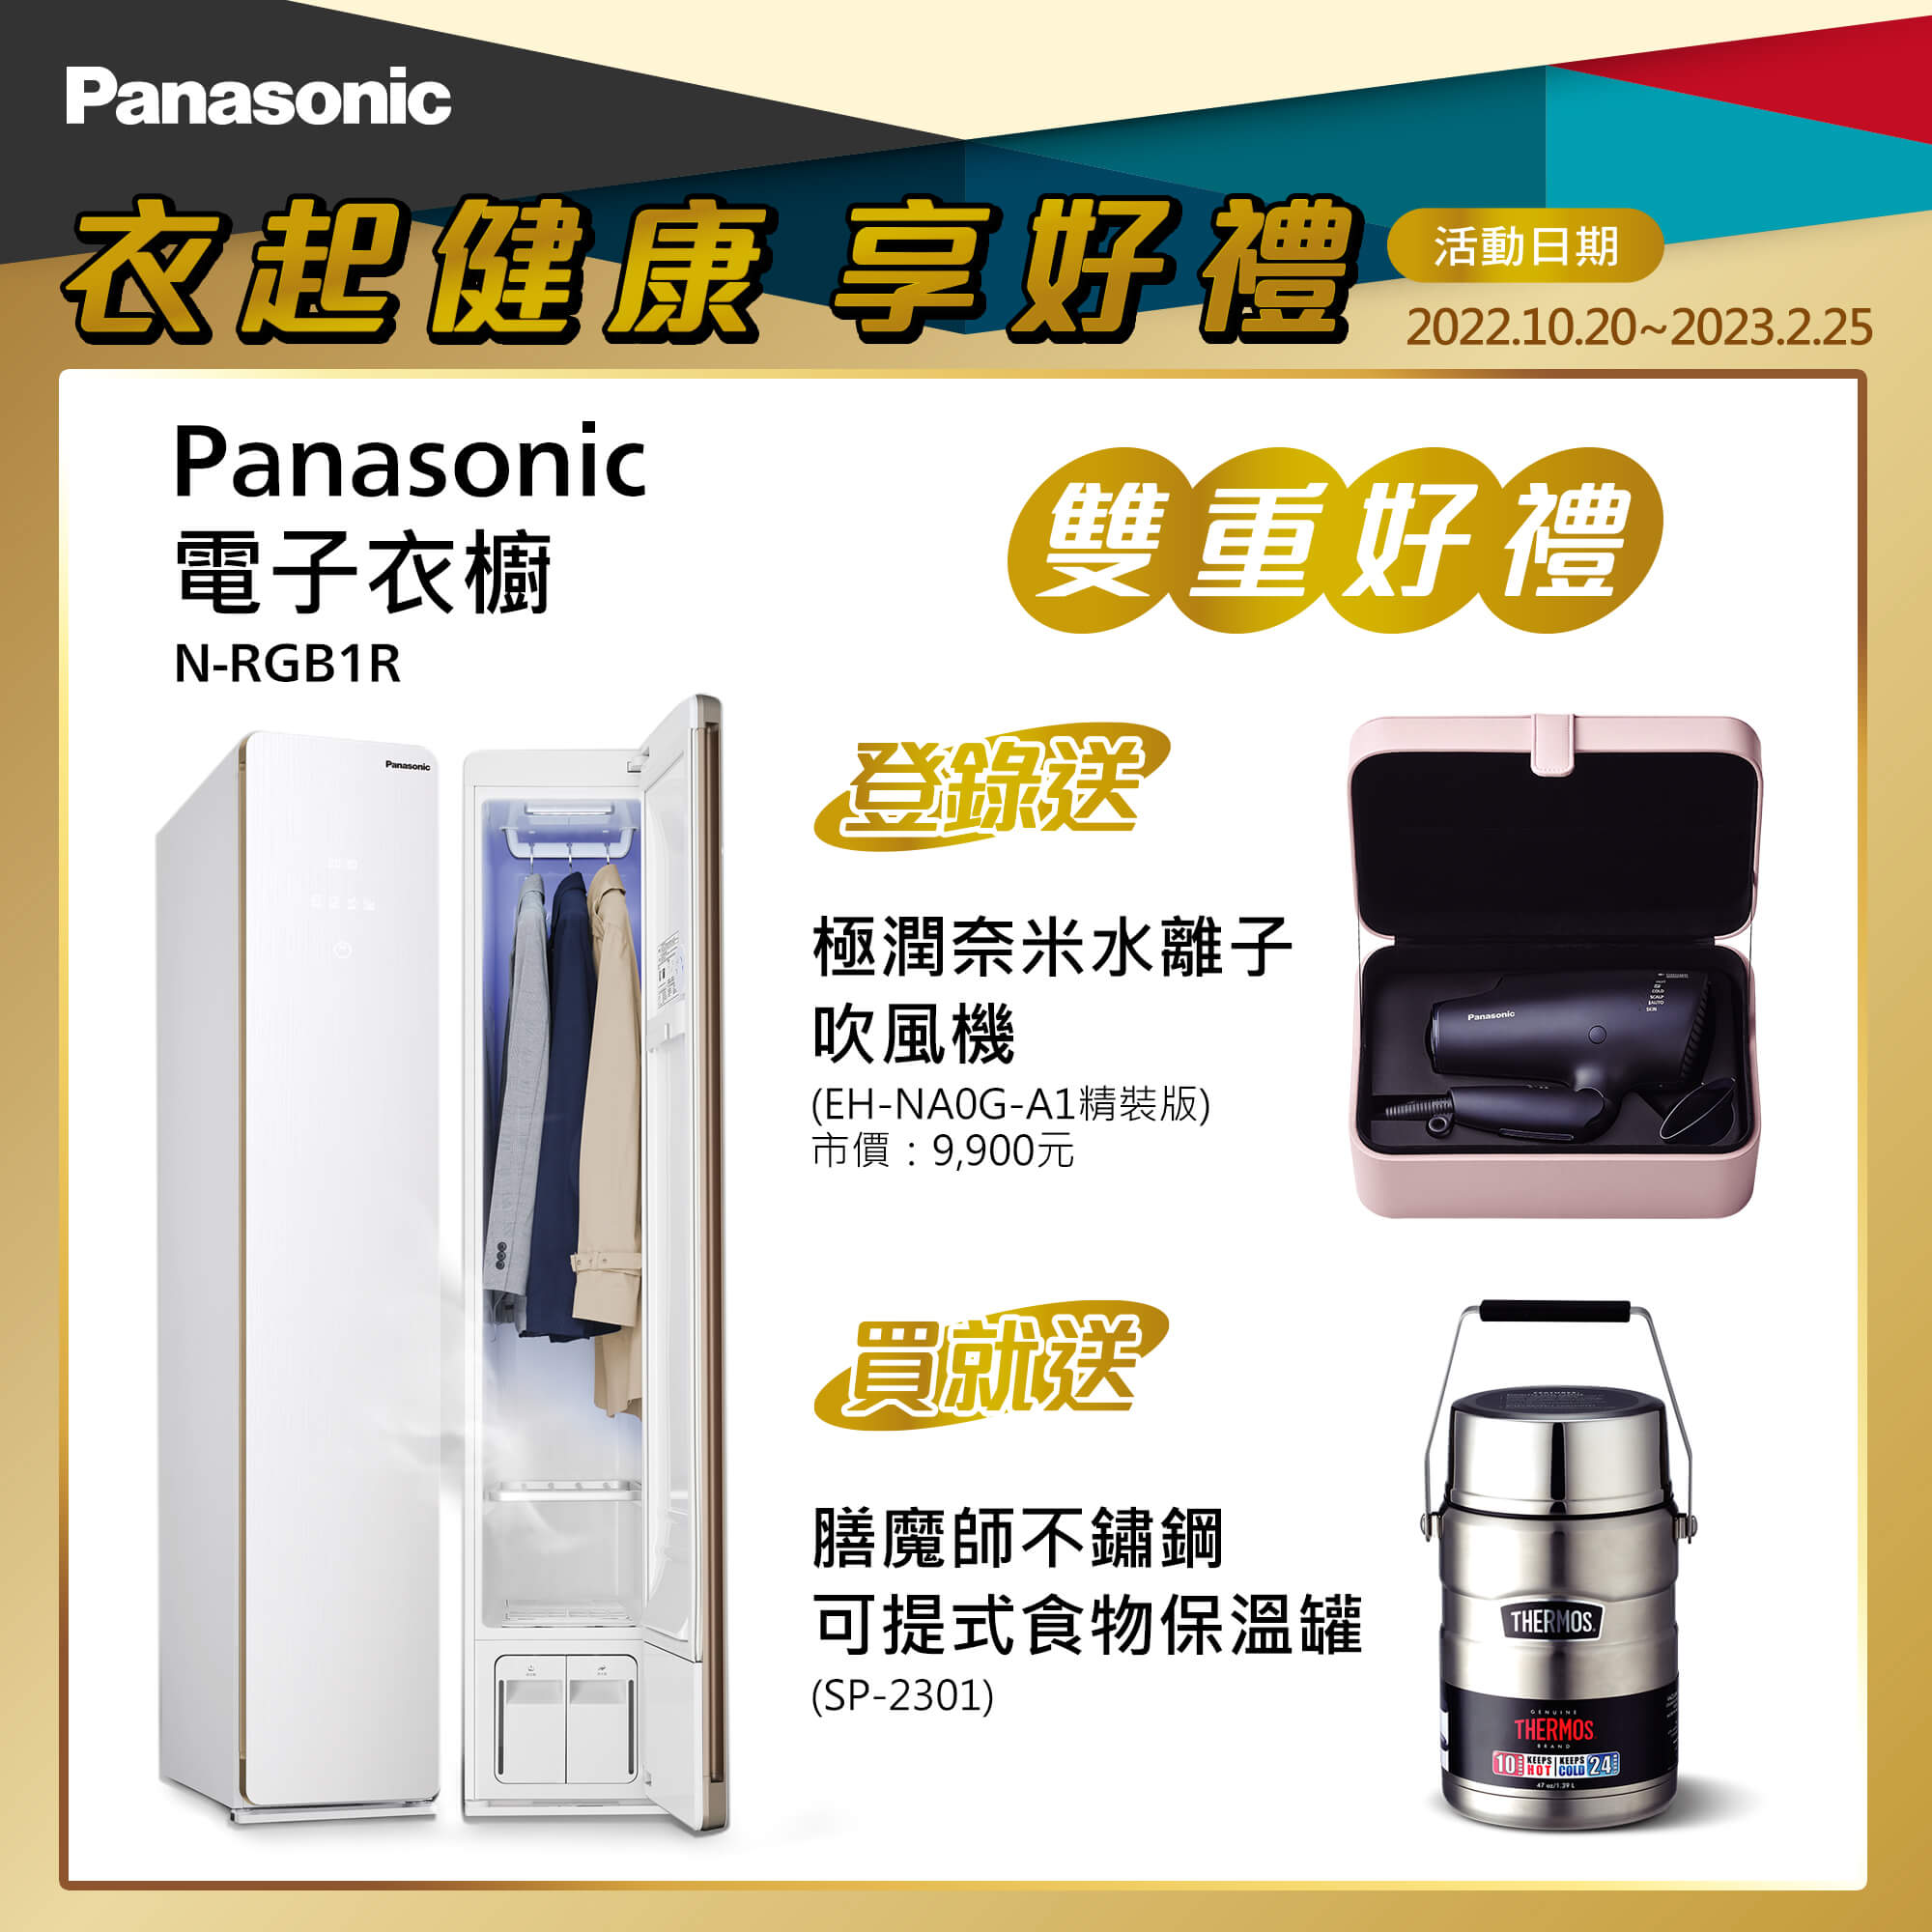 商品列表- Panasonic 台灣松下官方購物商城